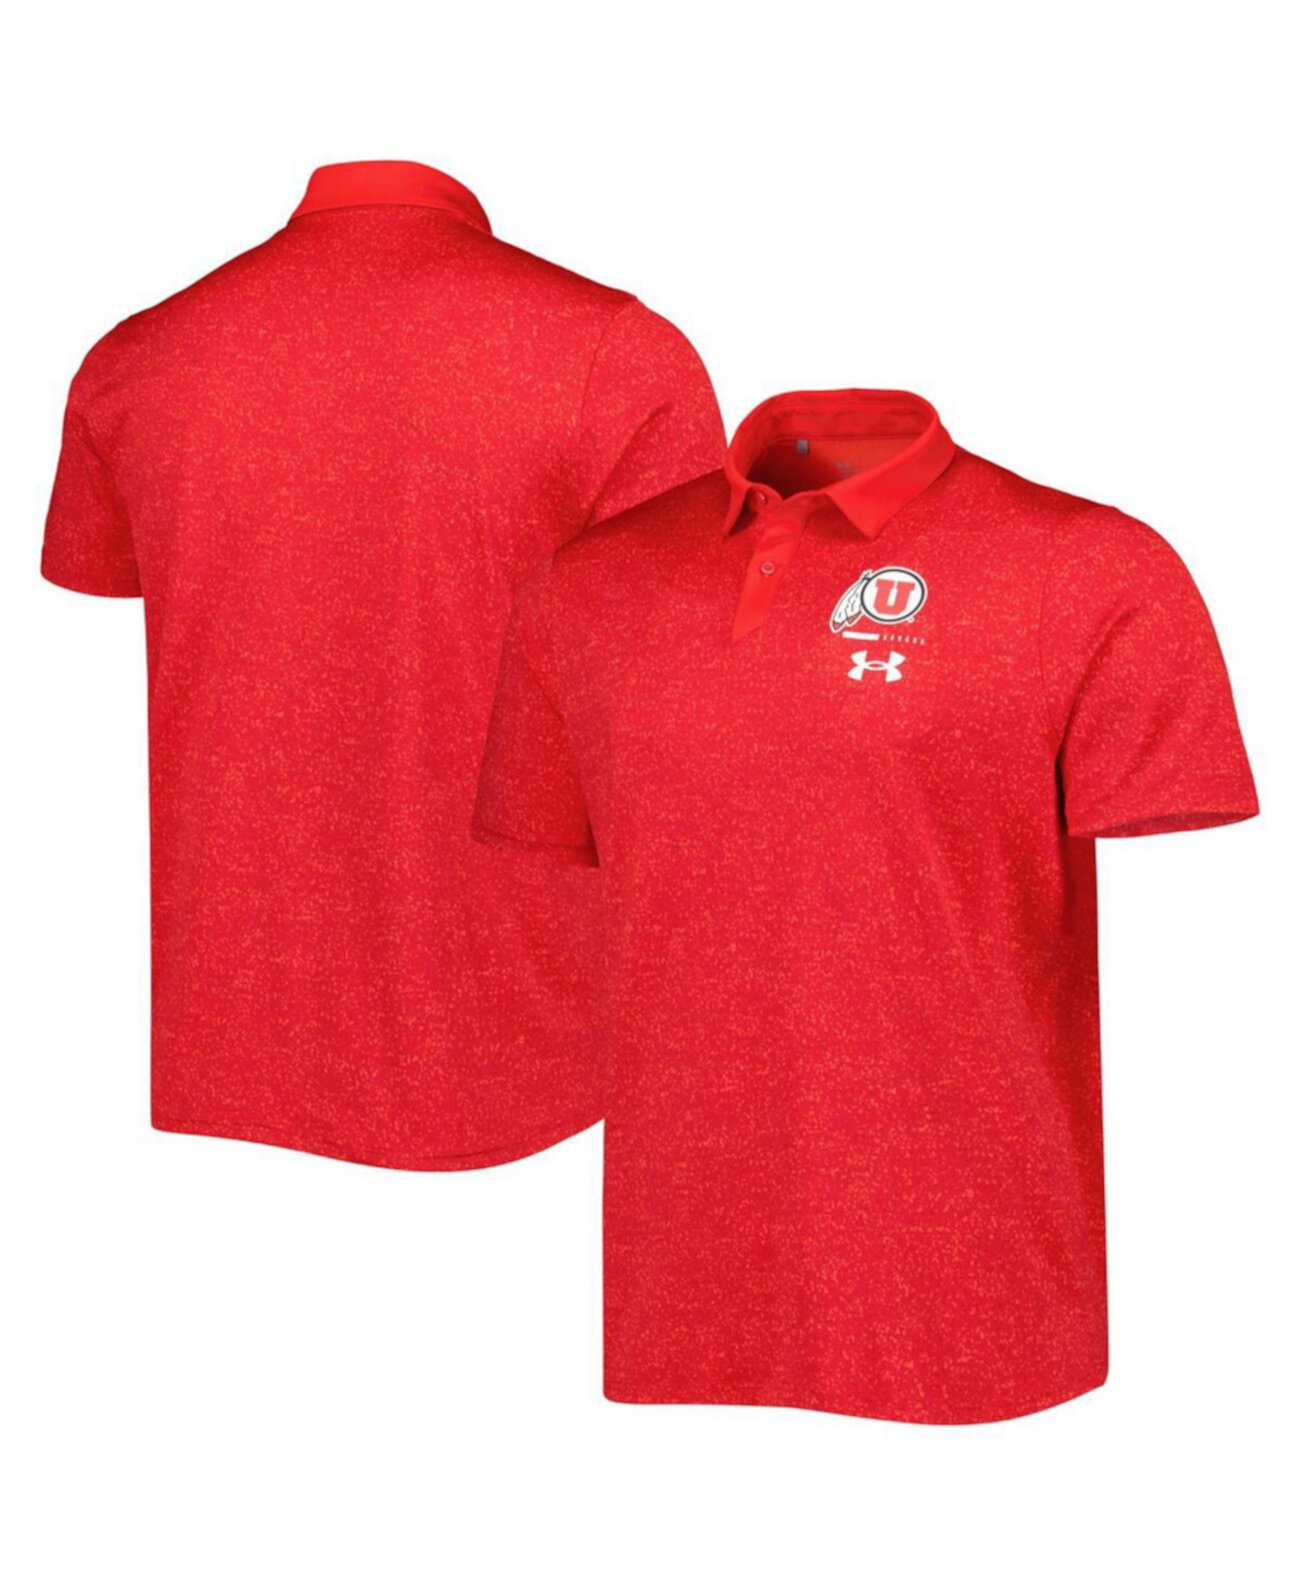 Мужская красная рубашка-поло Utah Utes Static Performance Under Armour